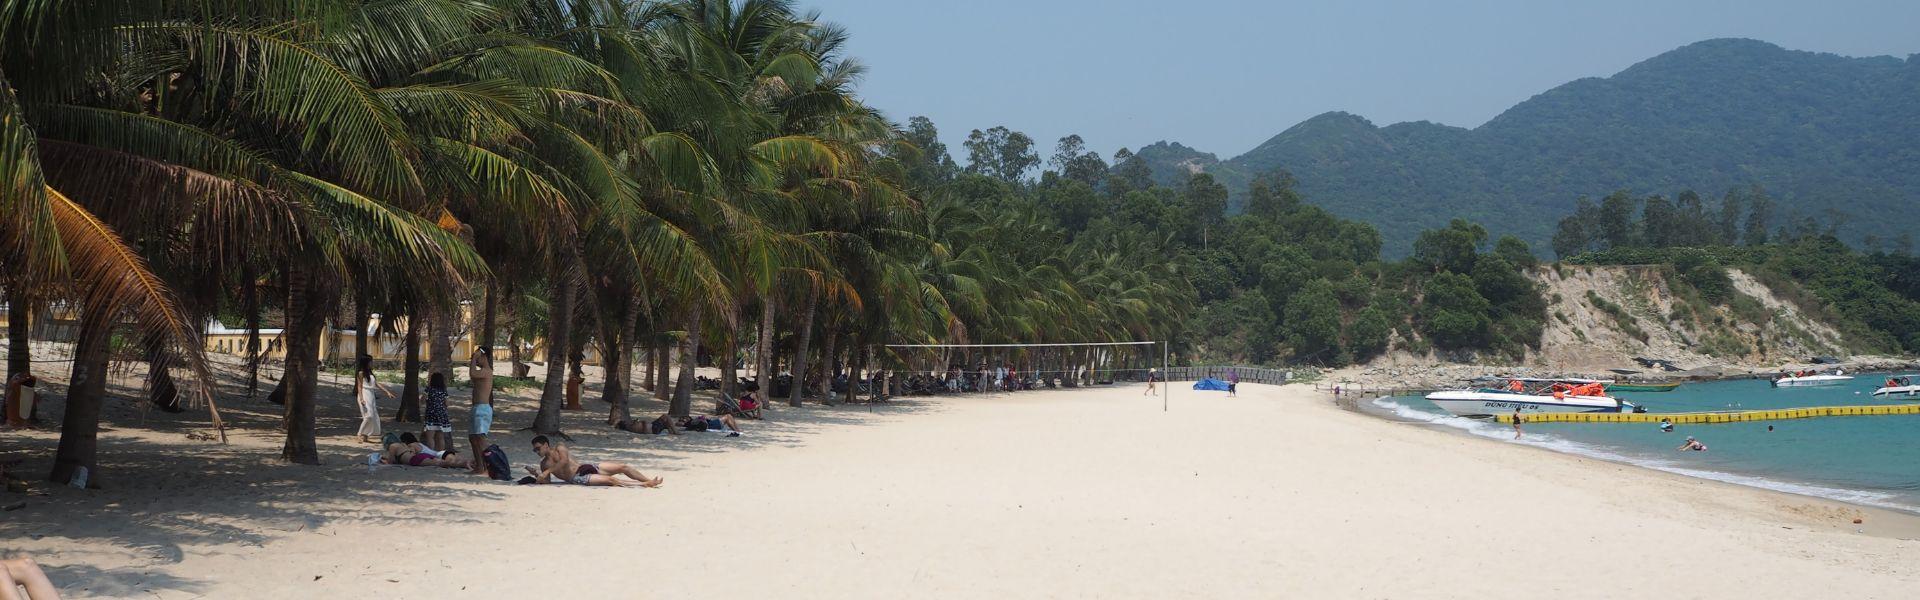 Ile de Phu Quoc - Guide complet pour bien profiter de votre séjour balnéaire